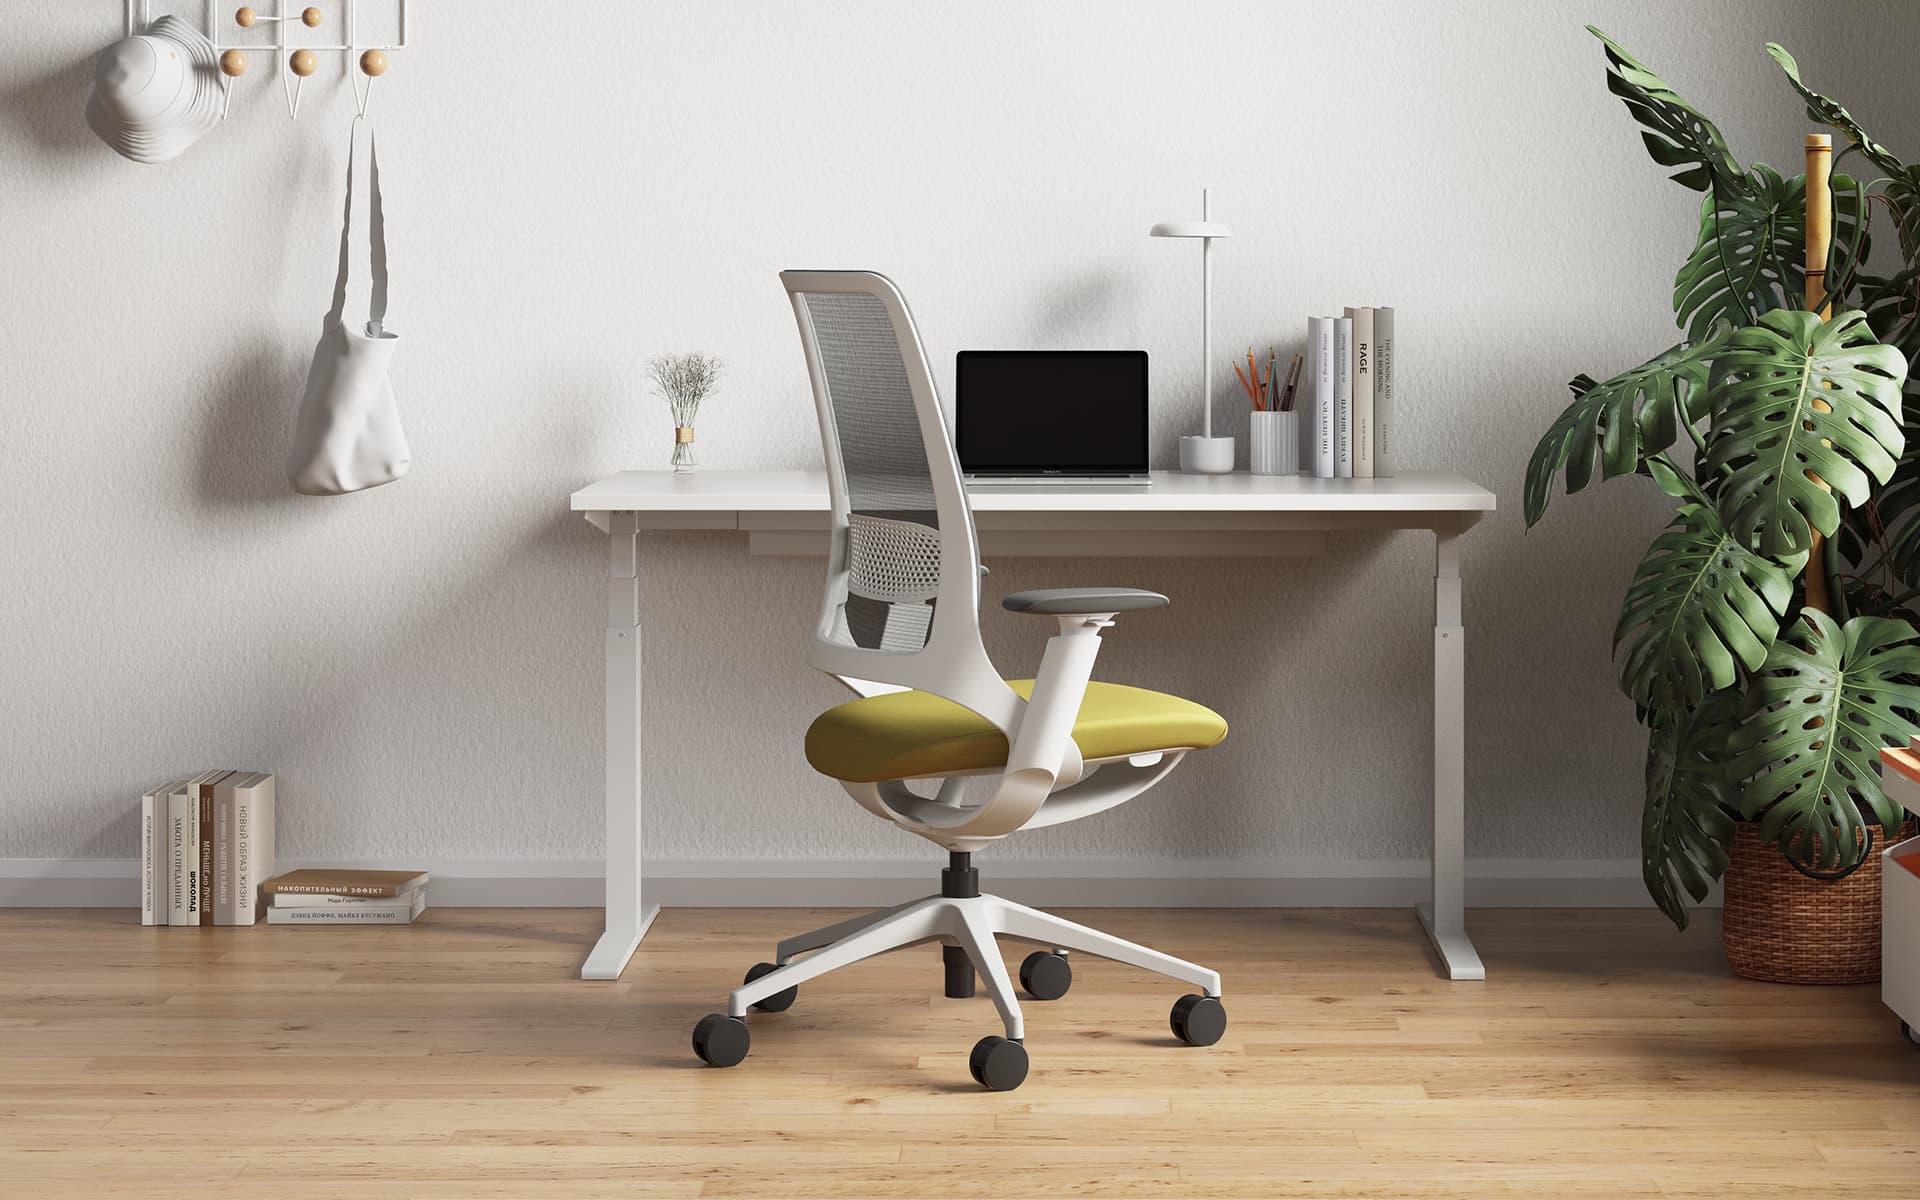 Enova Hug Bürostuhl von ITO Design mit grüner Sitzfläche und grauer Rücken- und Armlehne in einem modernen Homeoffice